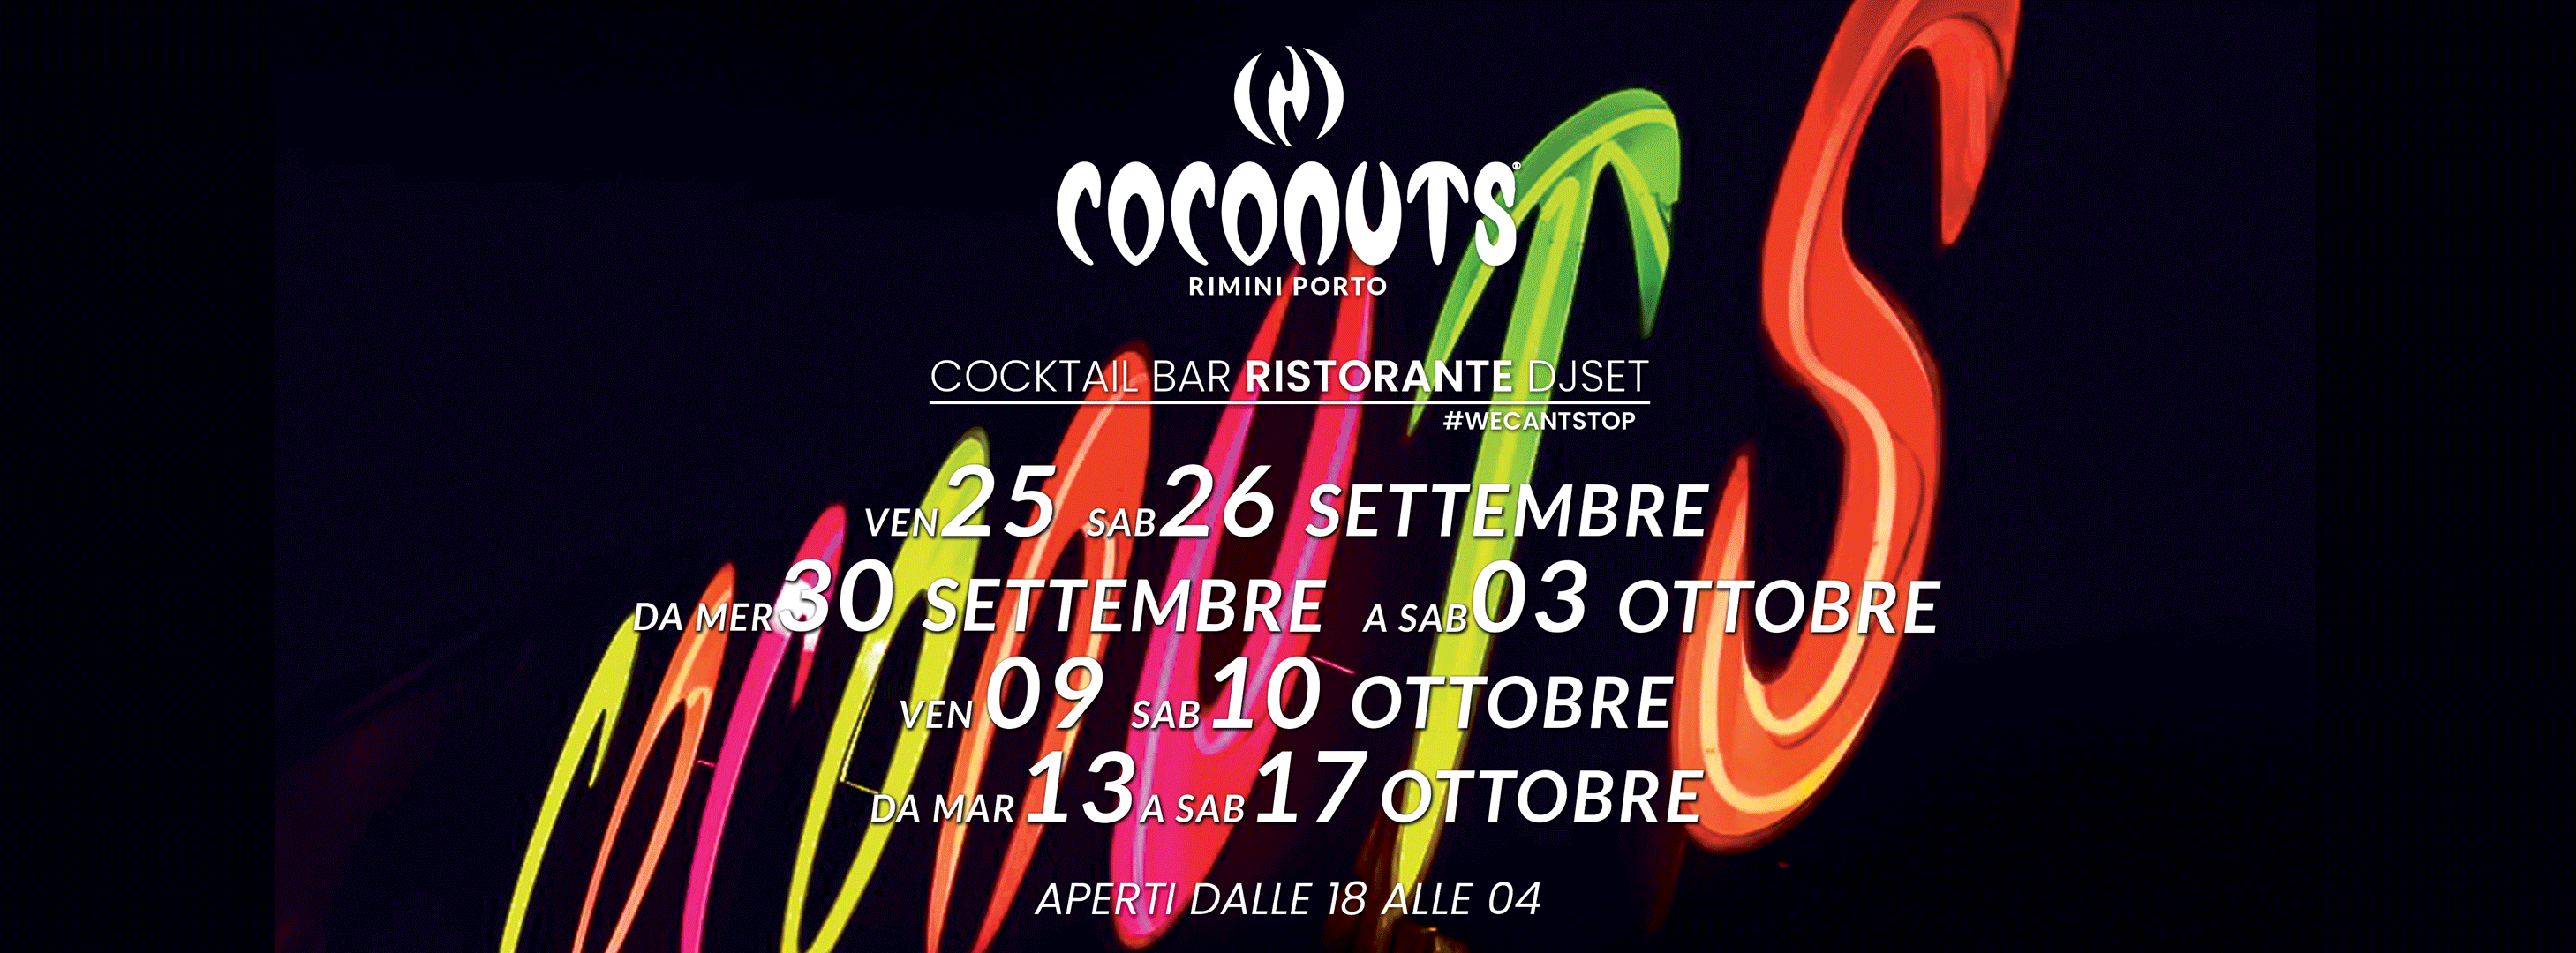 Coconuts Discoteca Rimini, ristorante, disco bar e musica